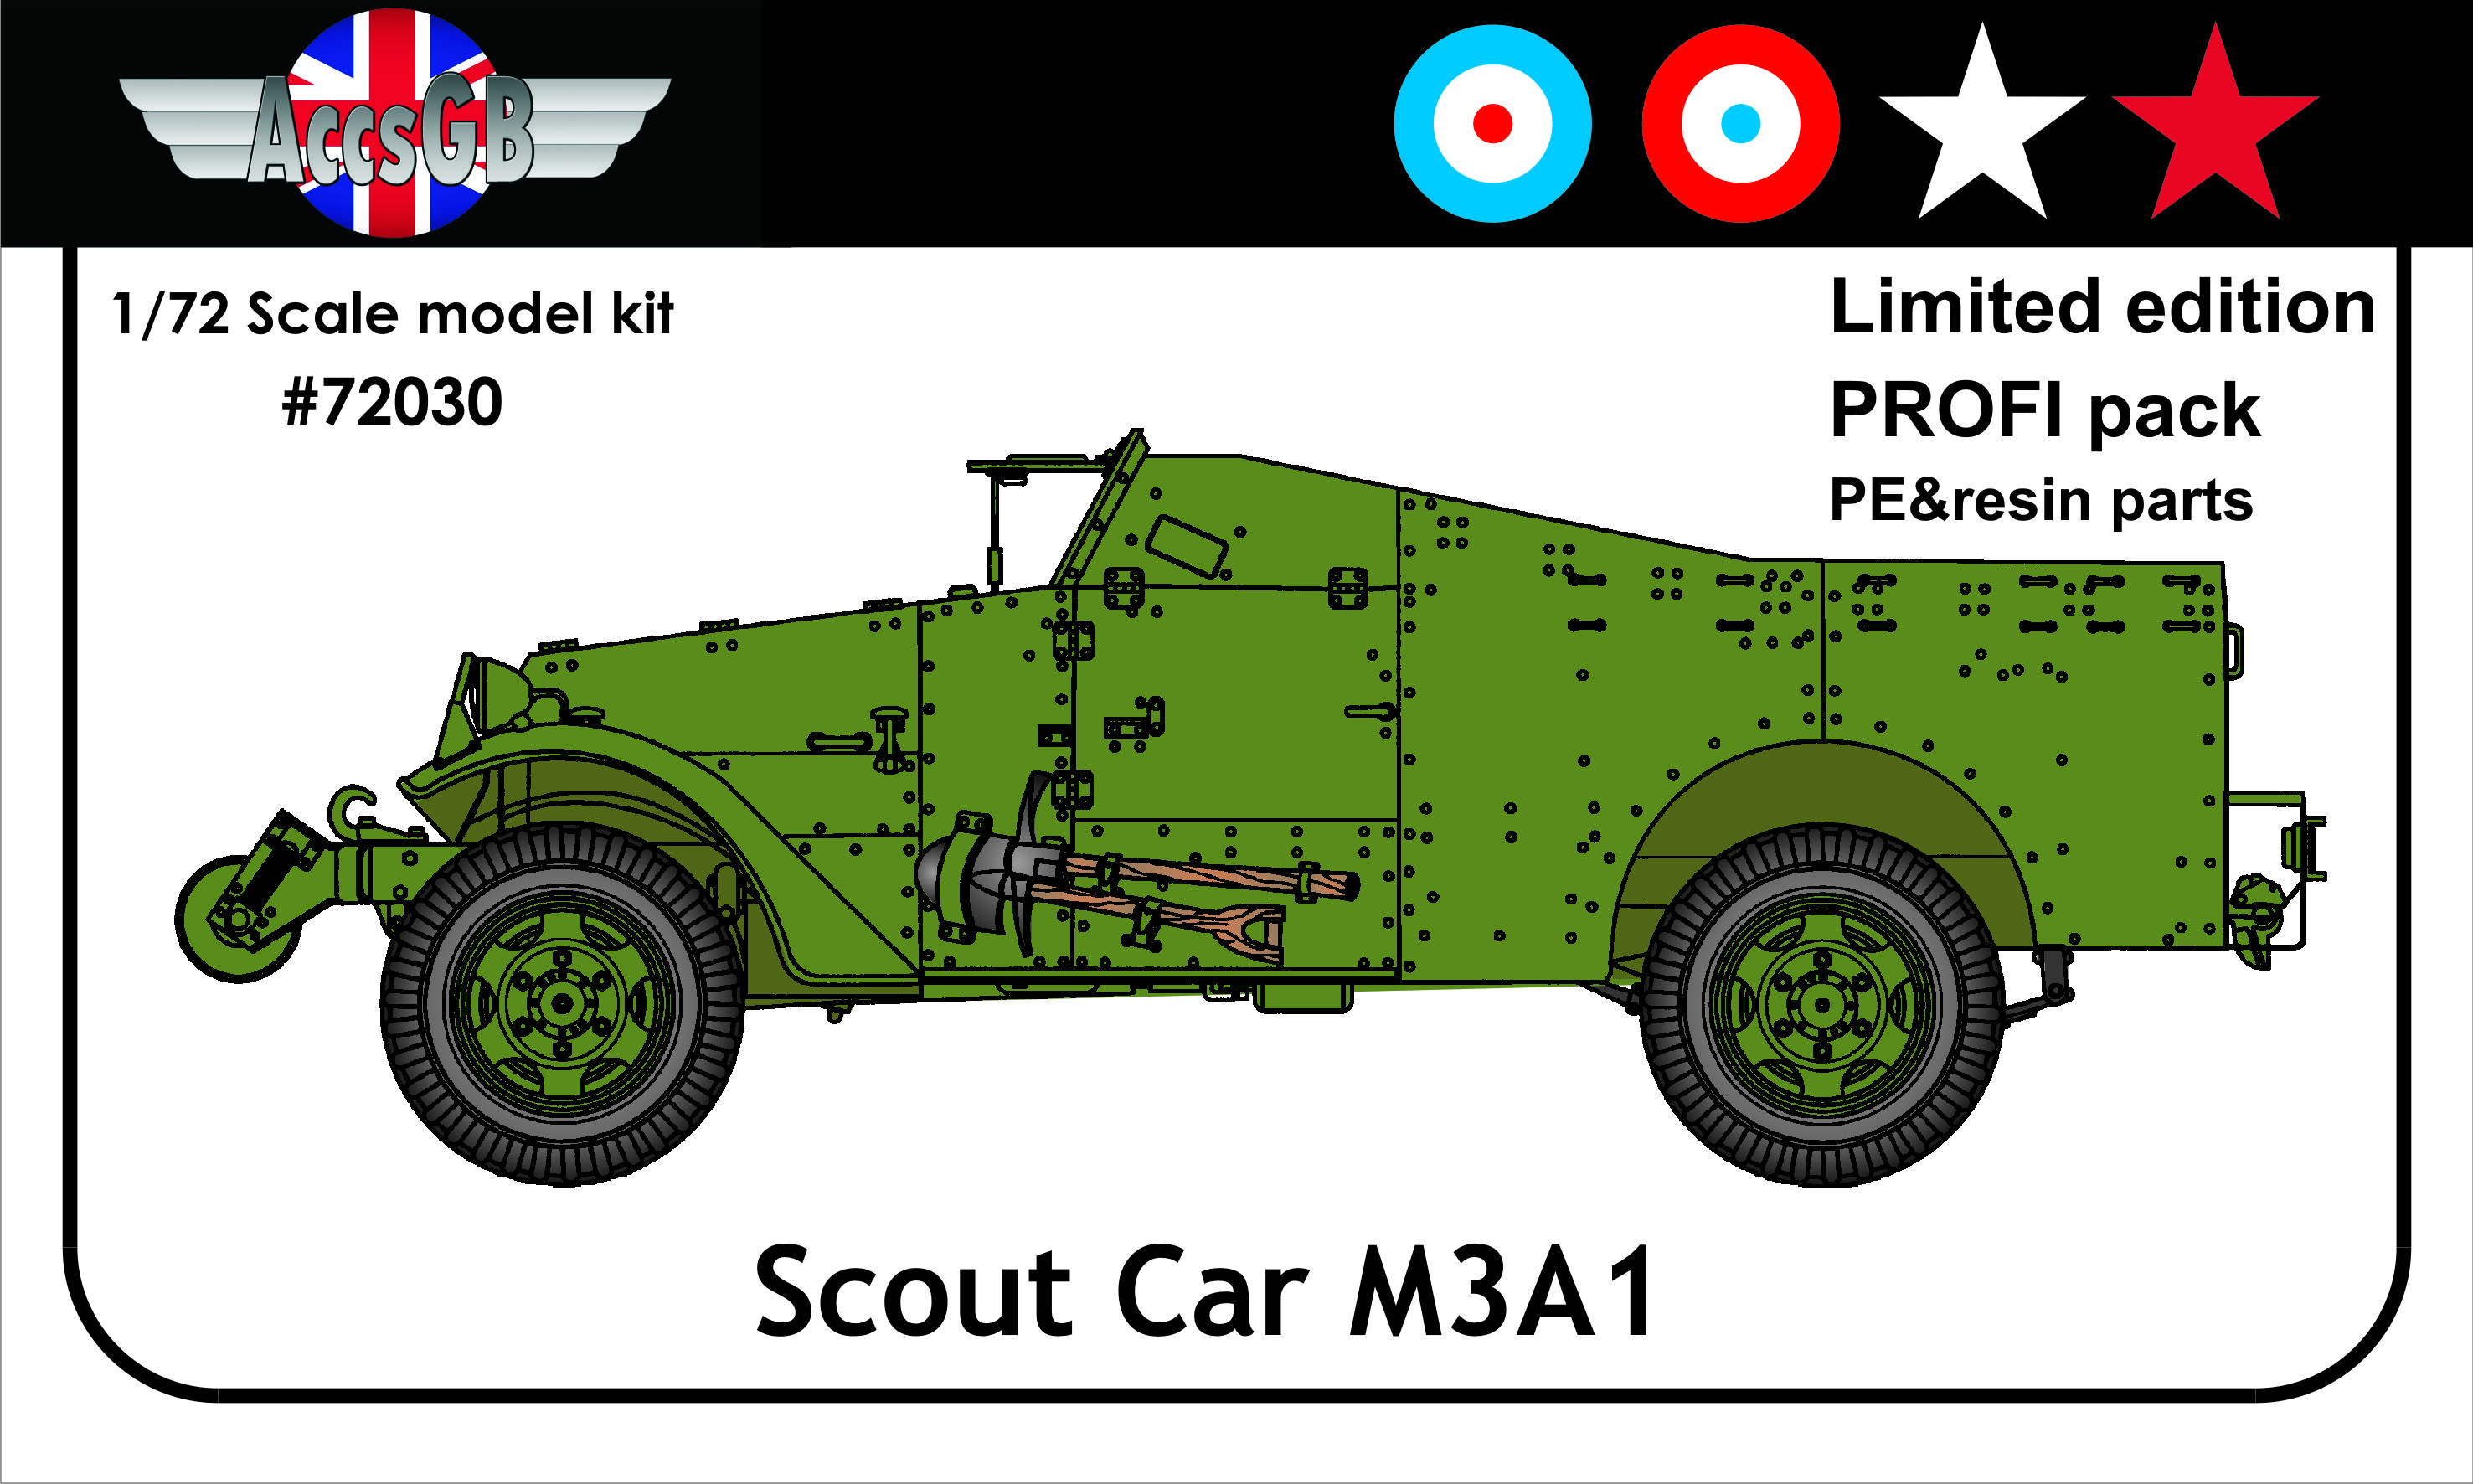 M3A1 Scout Car (PROFI pack)